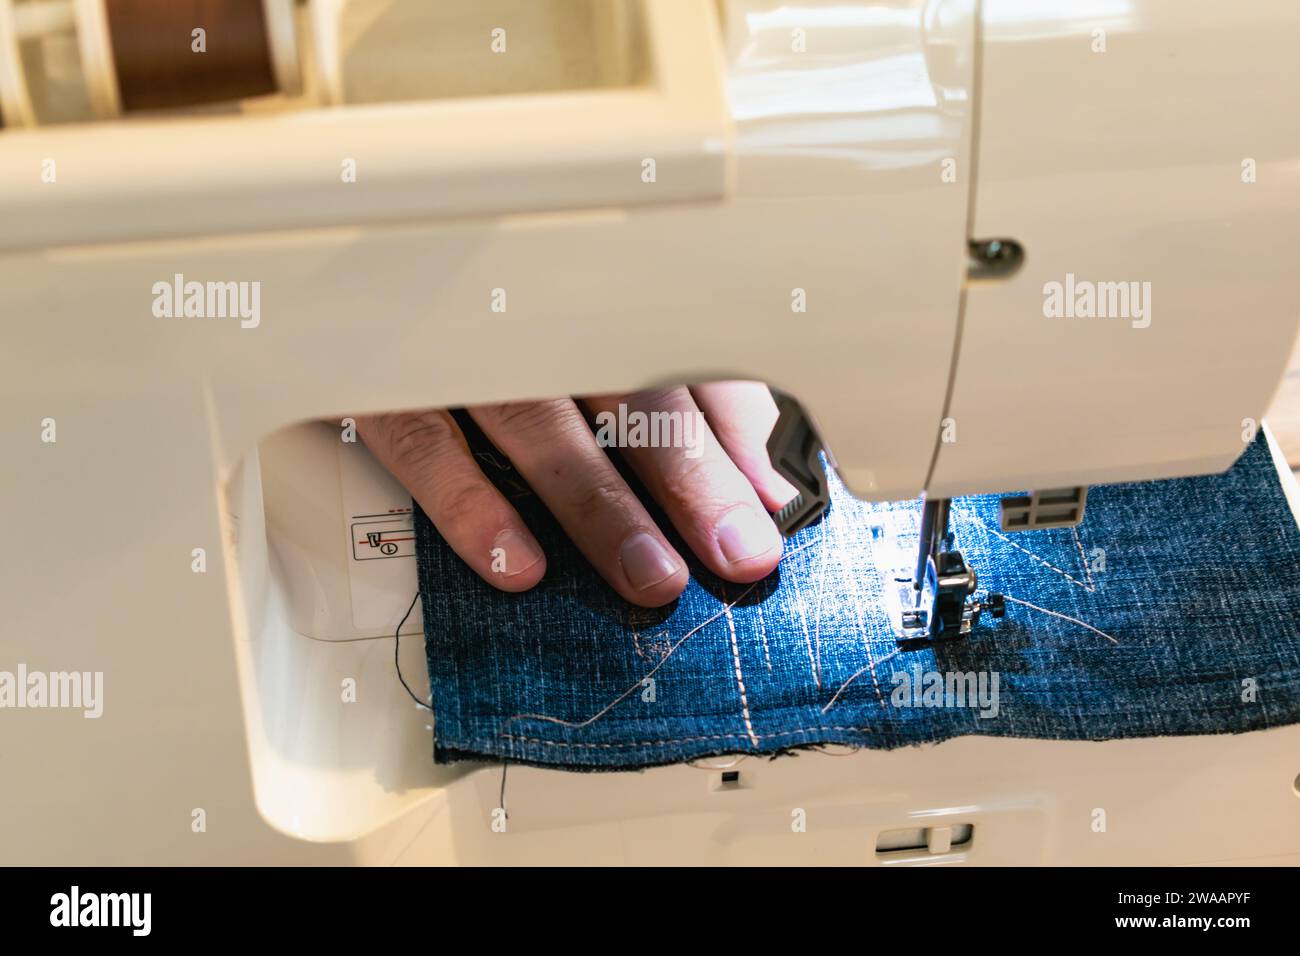 Uomo che usa una macchina da cucire con un indumento blu, per lavori di riparazione, personalizzazione, creazione, upcycling Foto Stock